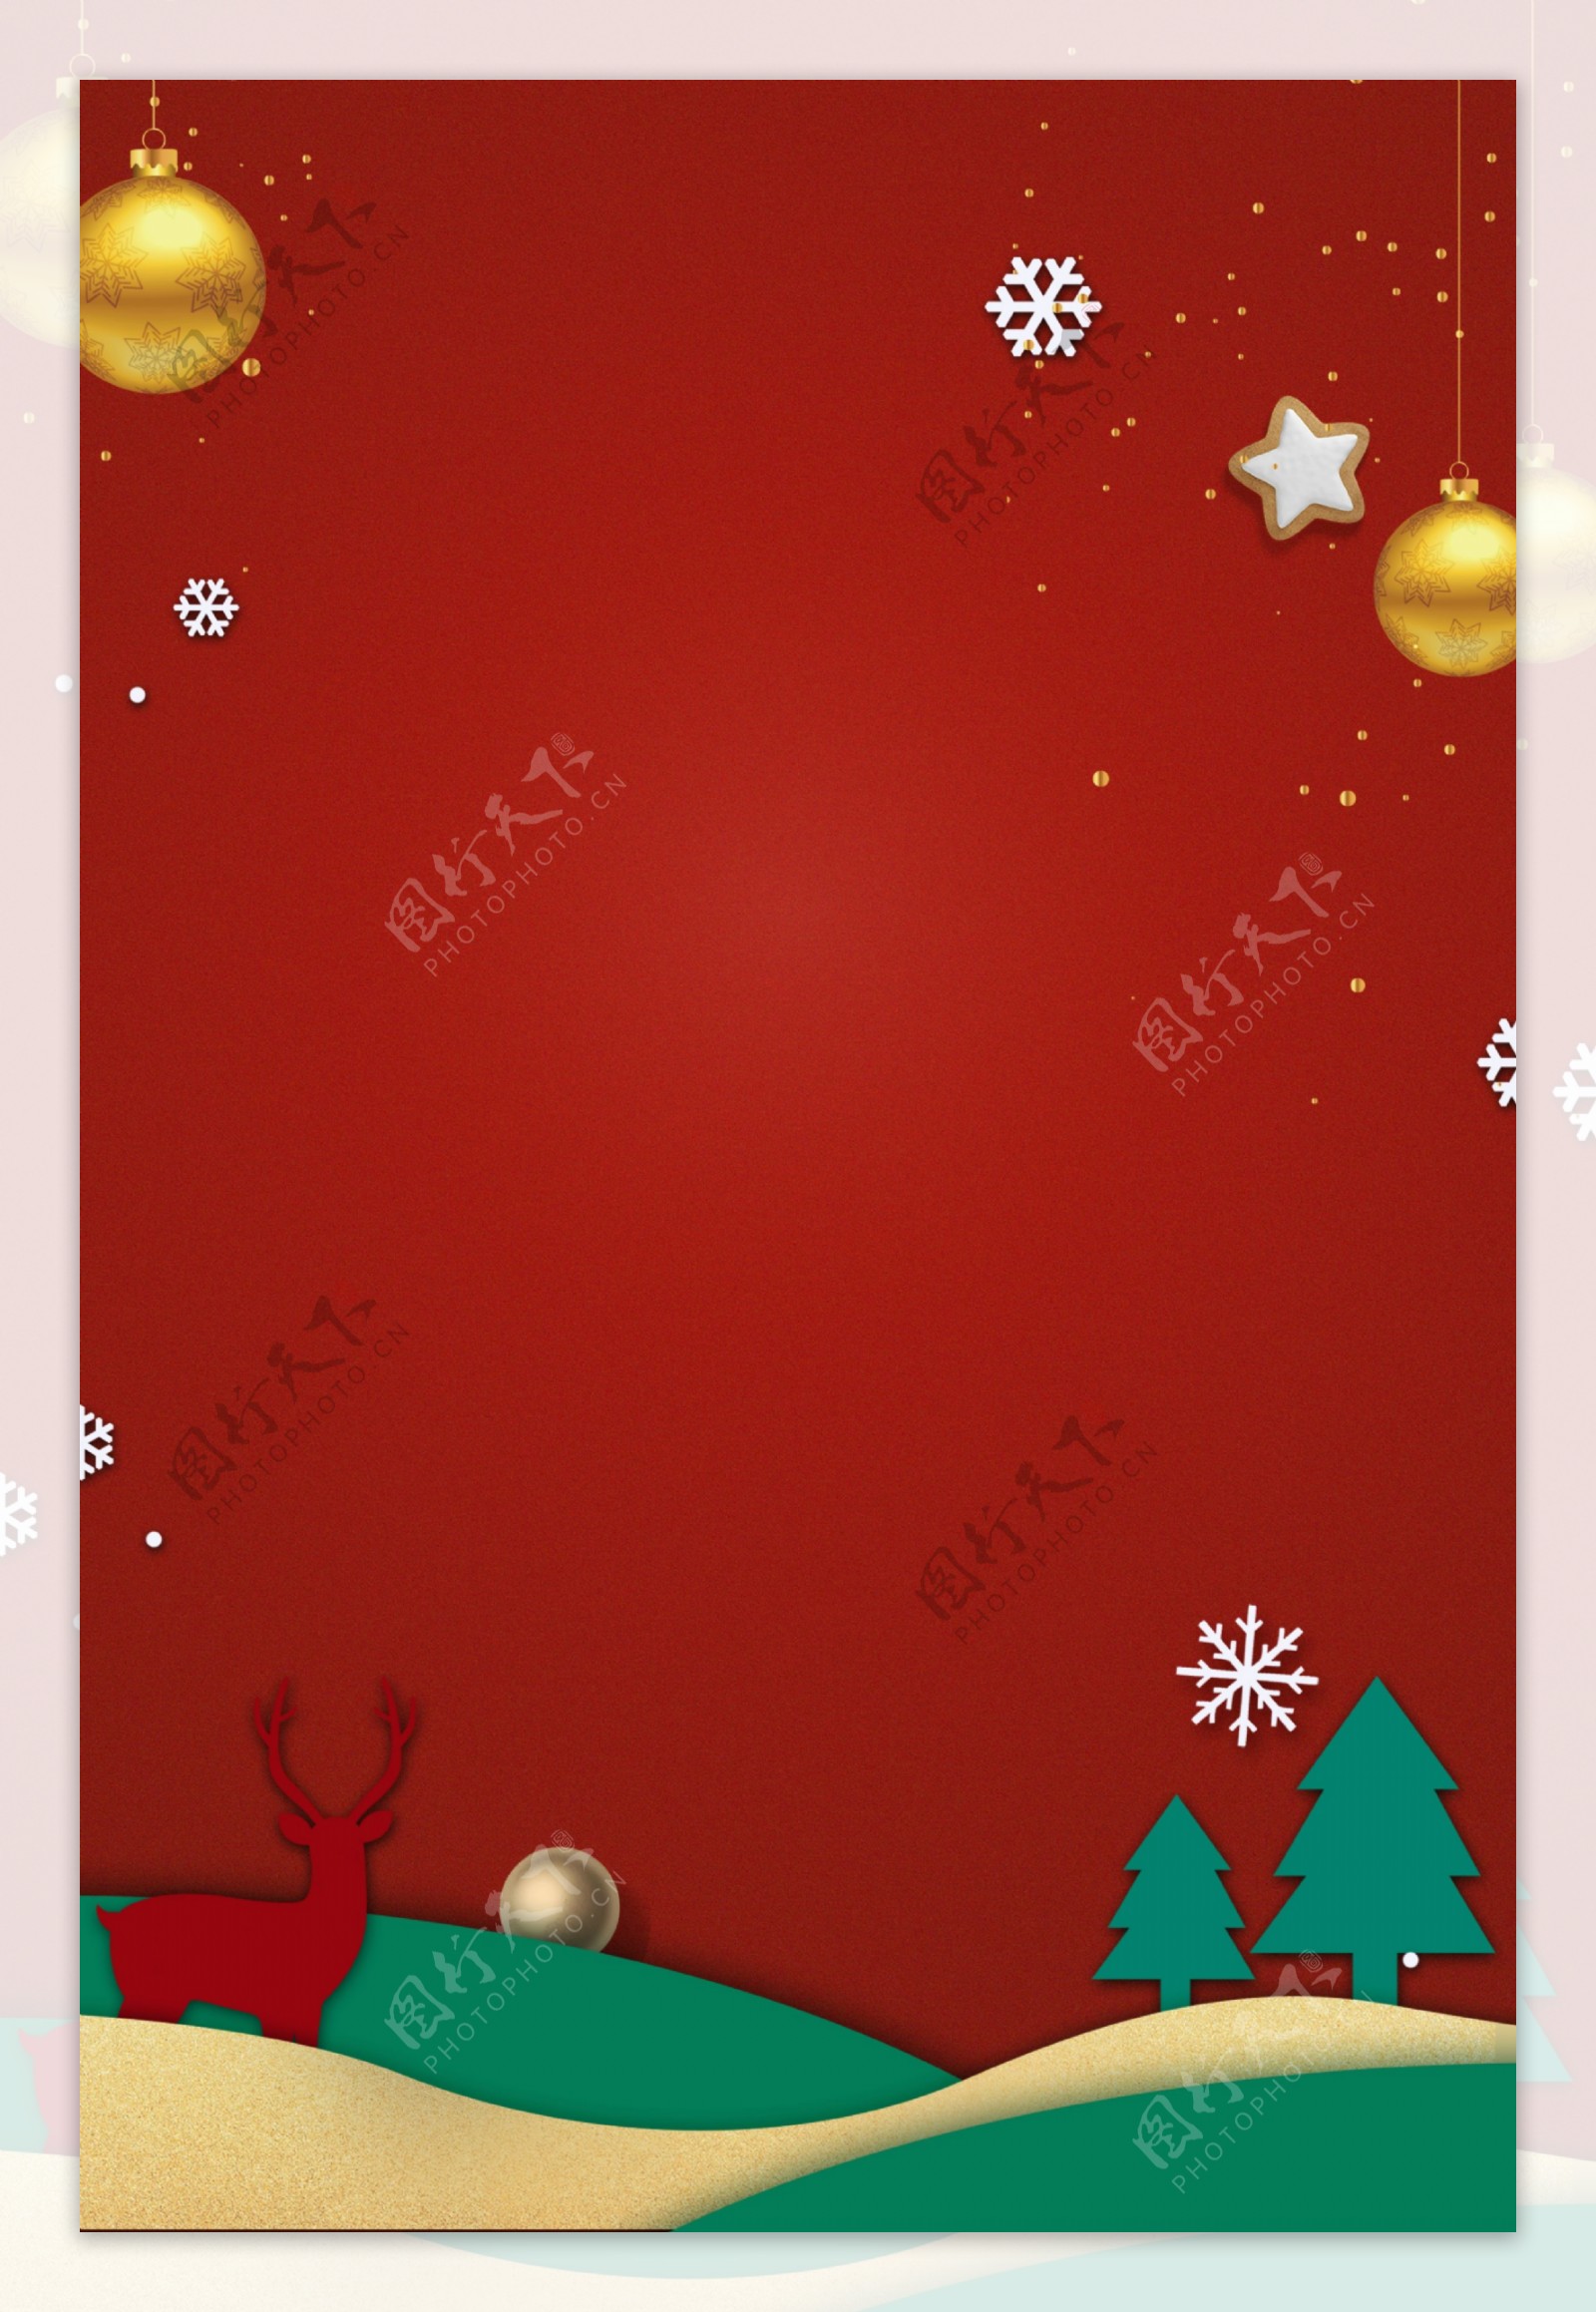 梦幻剪纸风圣诞节大气红色背景海报